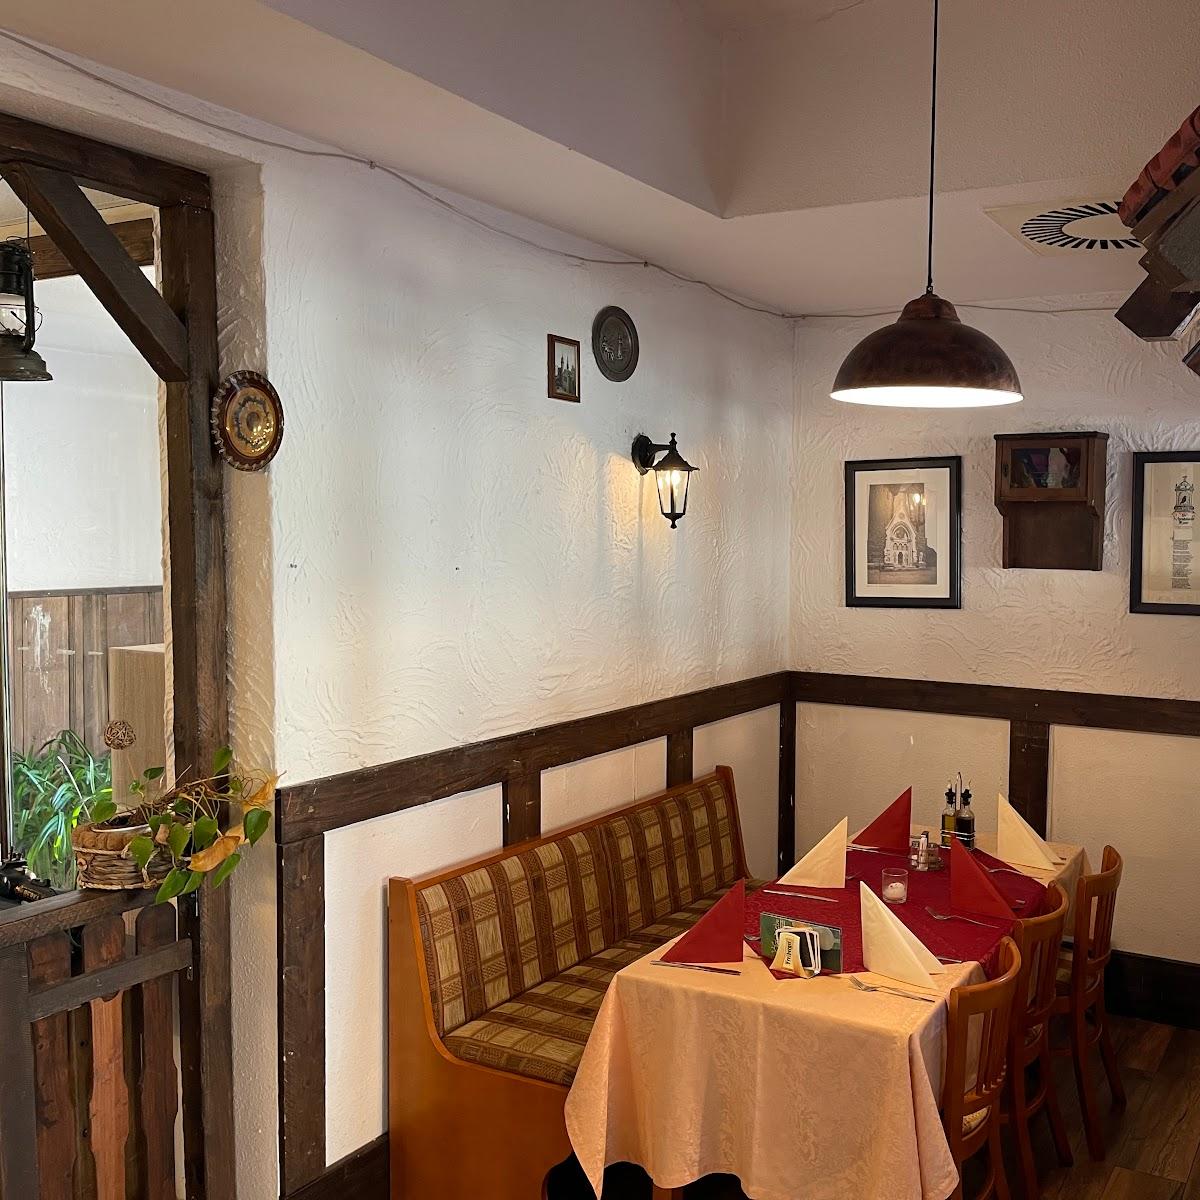 Restaurant "Samos Grill" in Merseburg